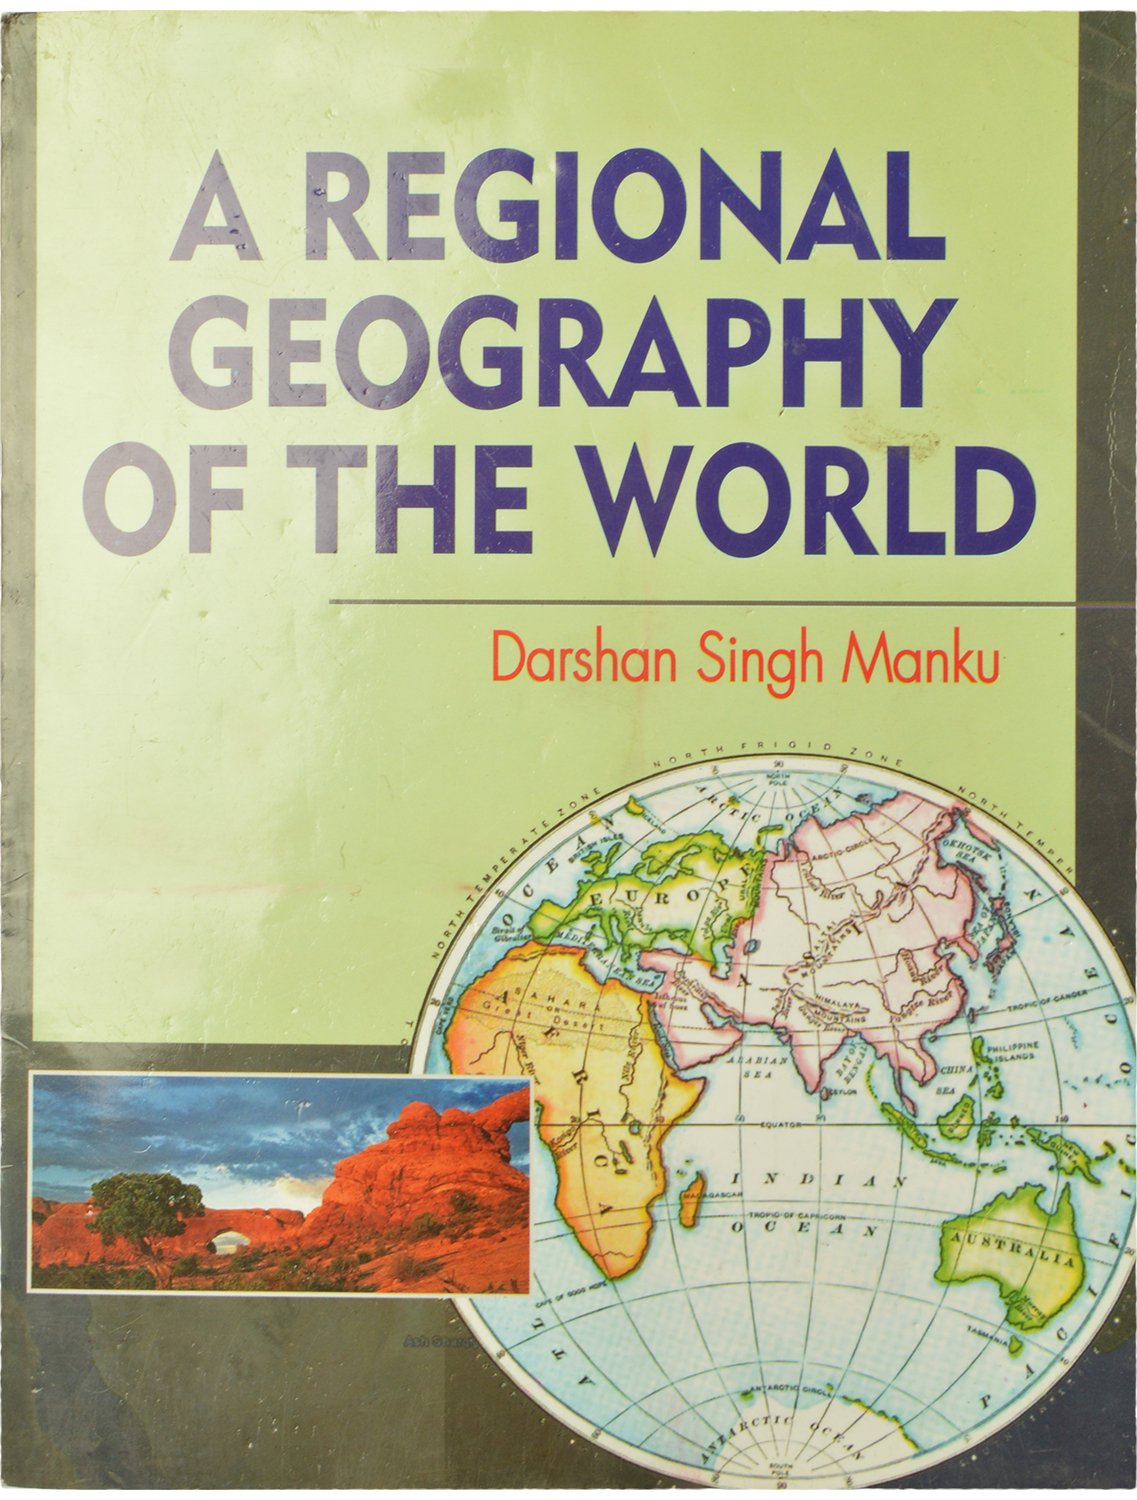 Regional Geography